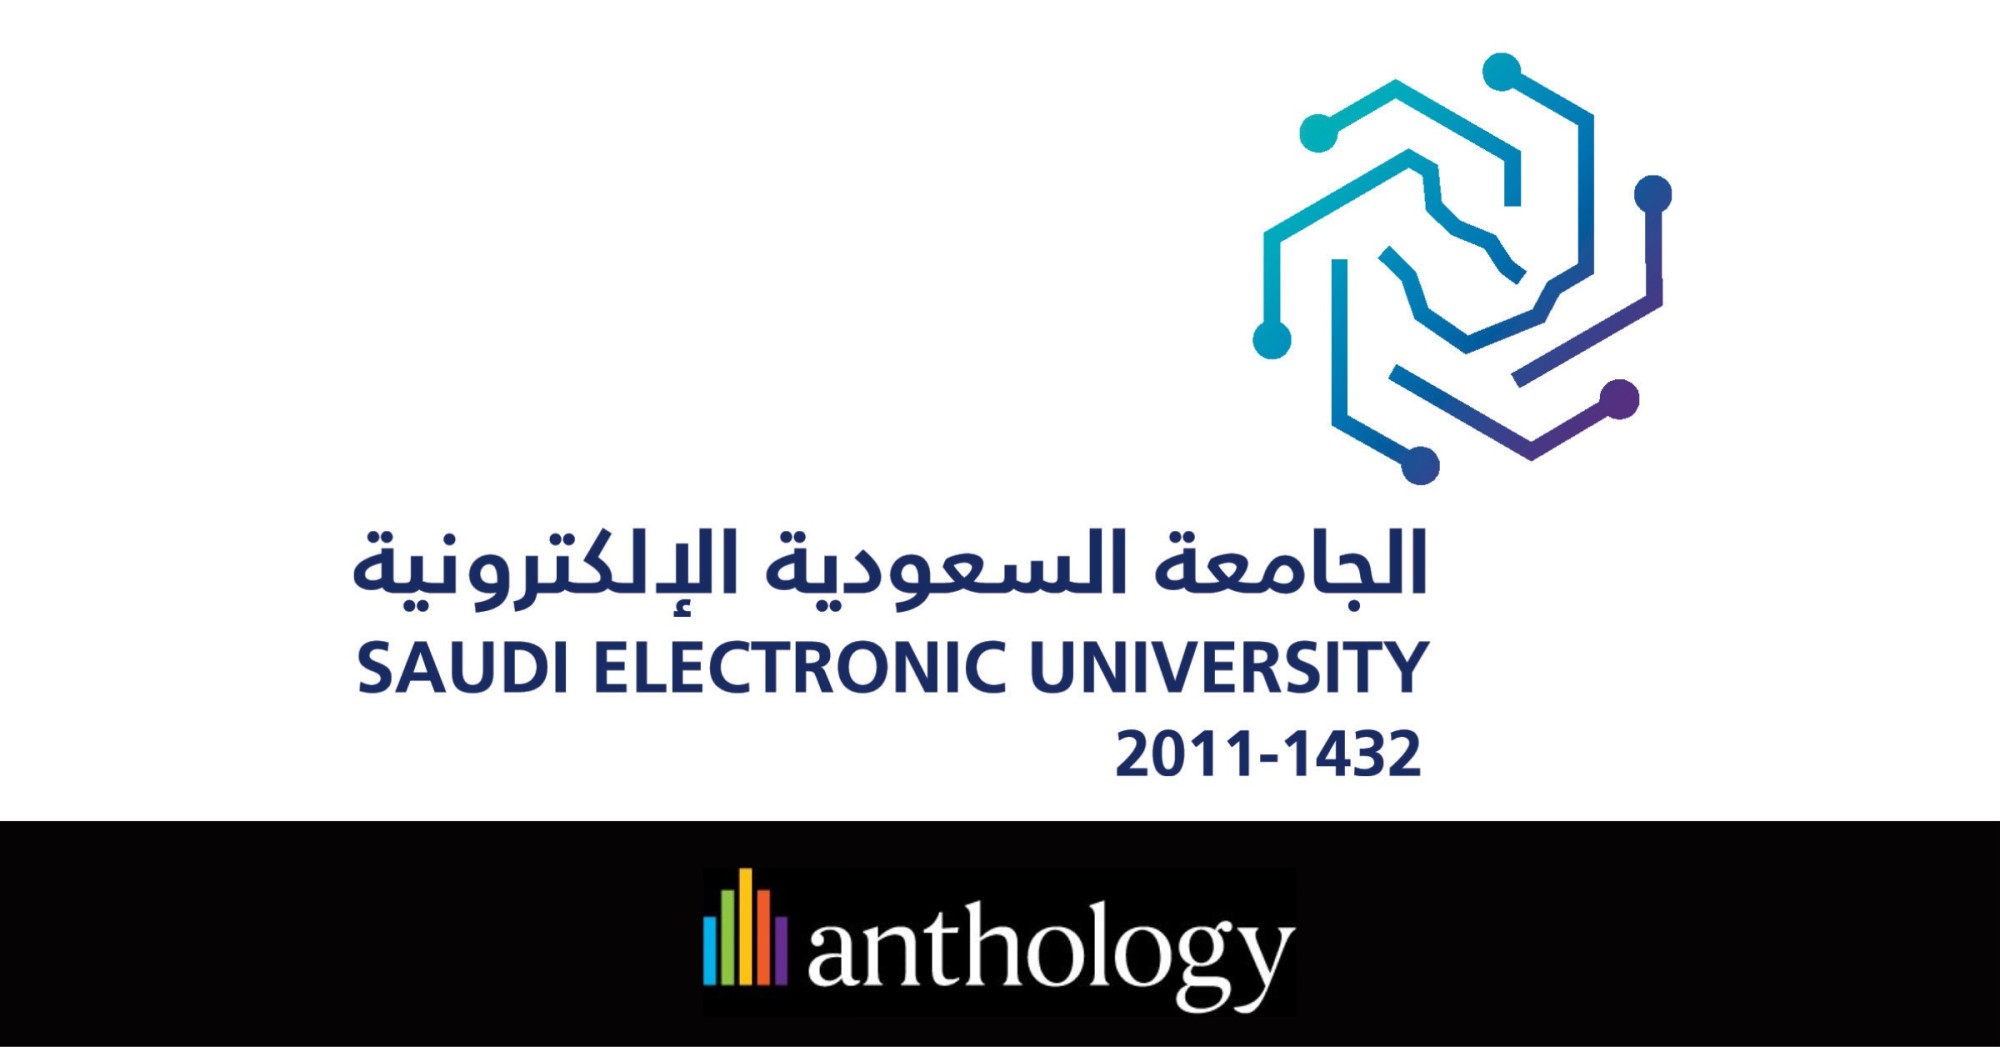 Saudi Electronic University logo locked up with Anthology logo